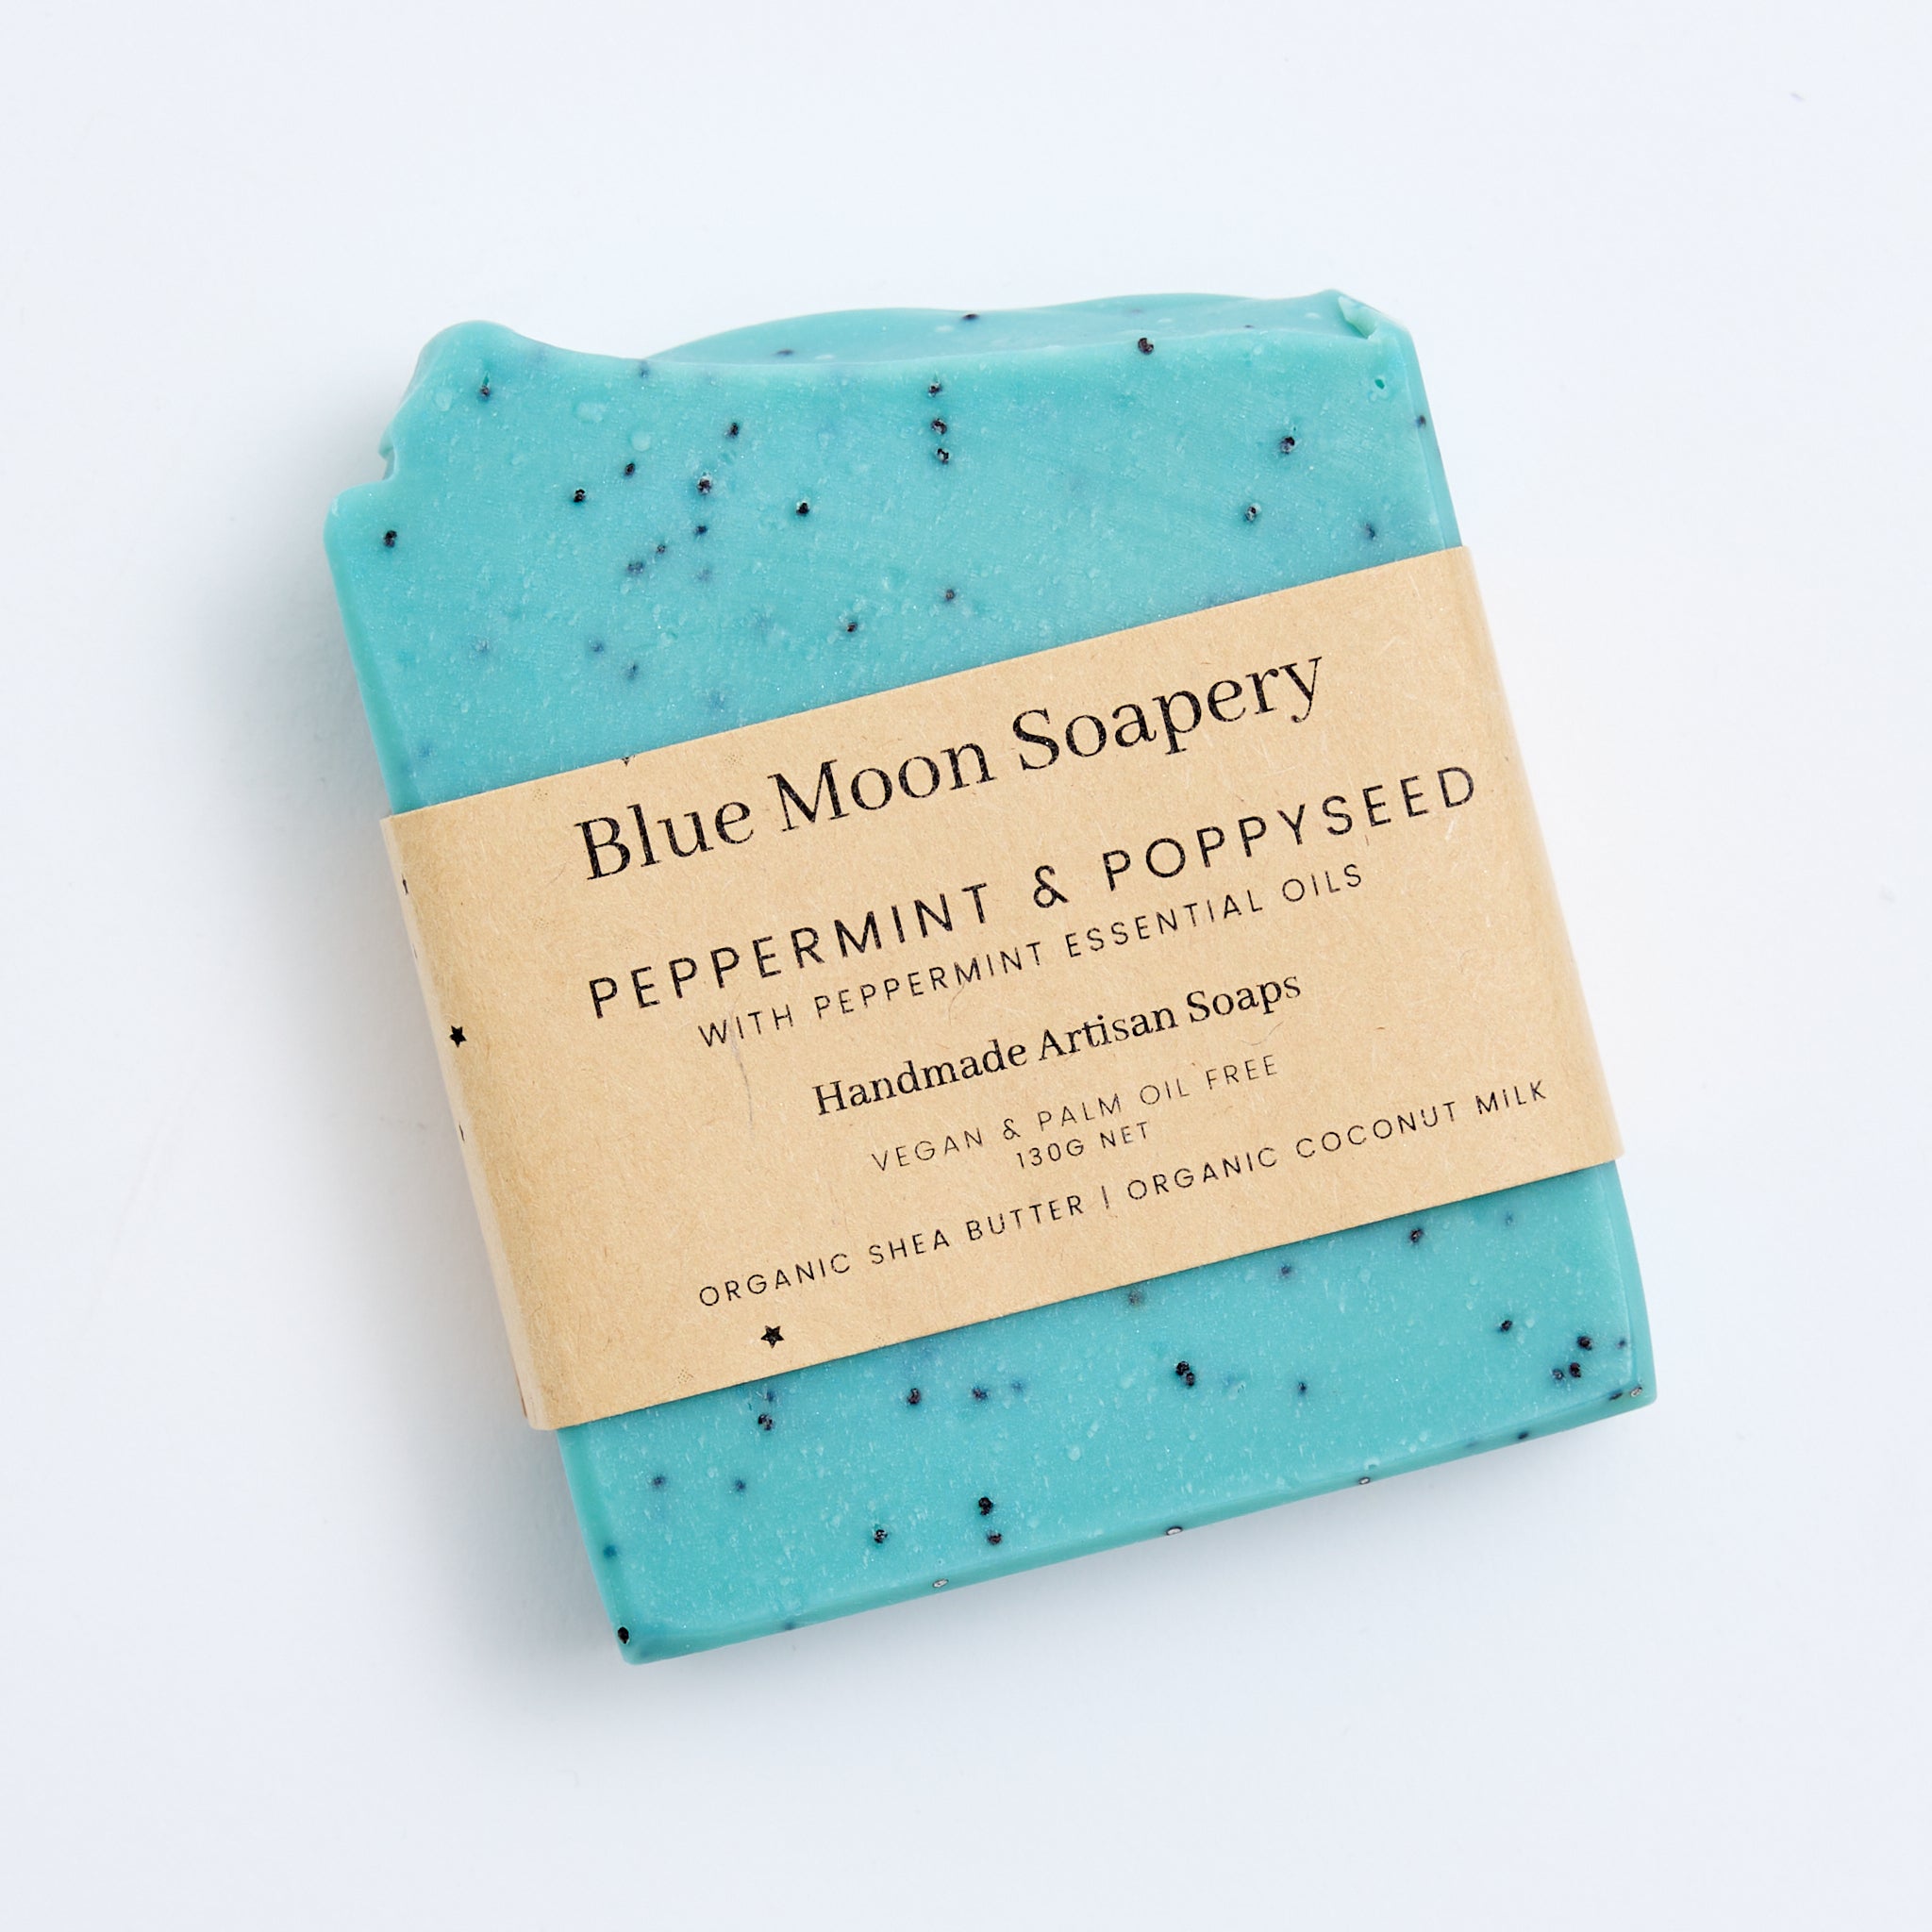 Blue Moon Soapery peppermint & poppyseed soap